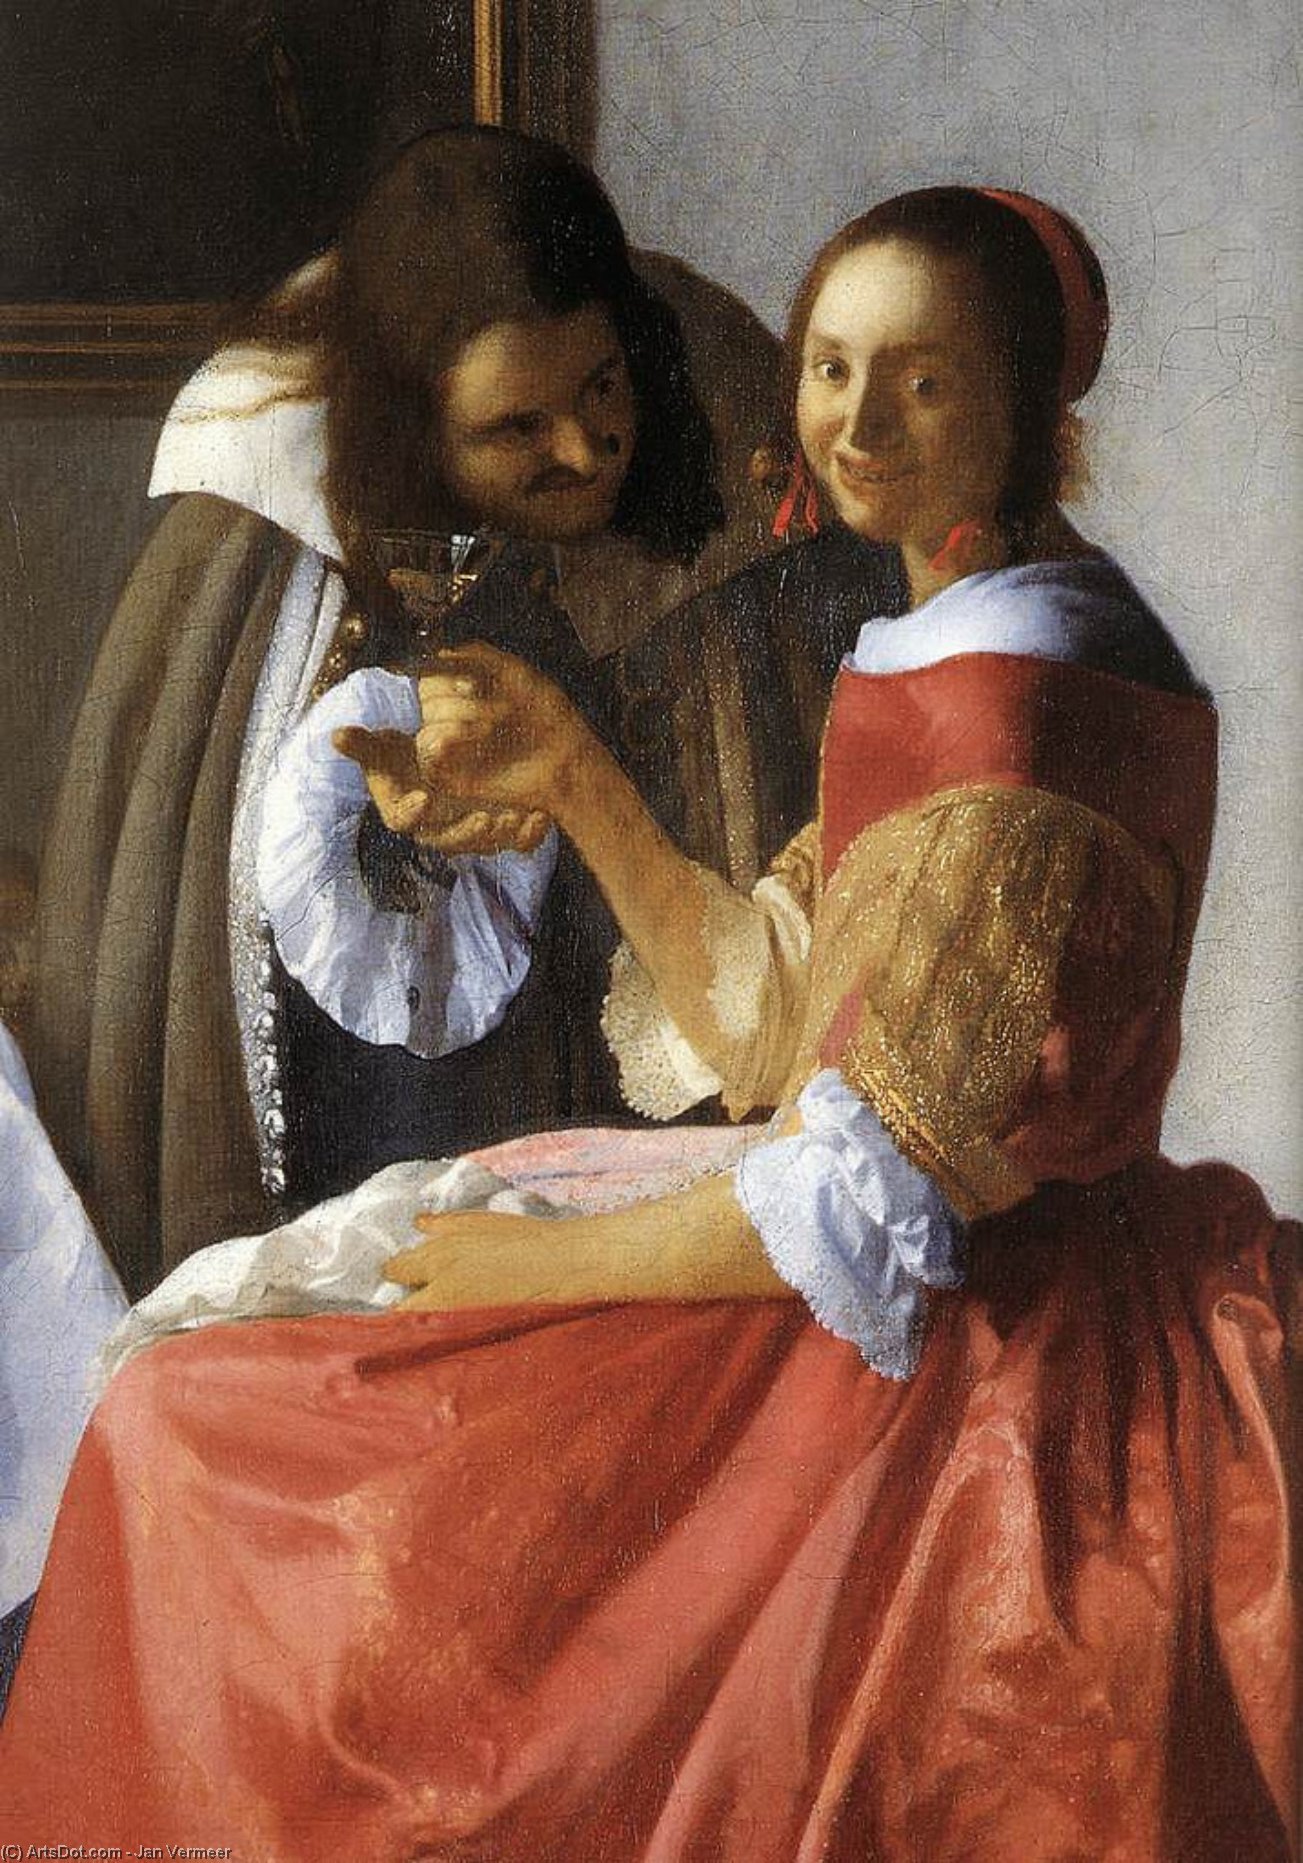 WikiOO.org - Encyclopedia of Fine Arts - Maleri, Artwork Jan Vermeer - A Lady and Two Gentlemen (detail)